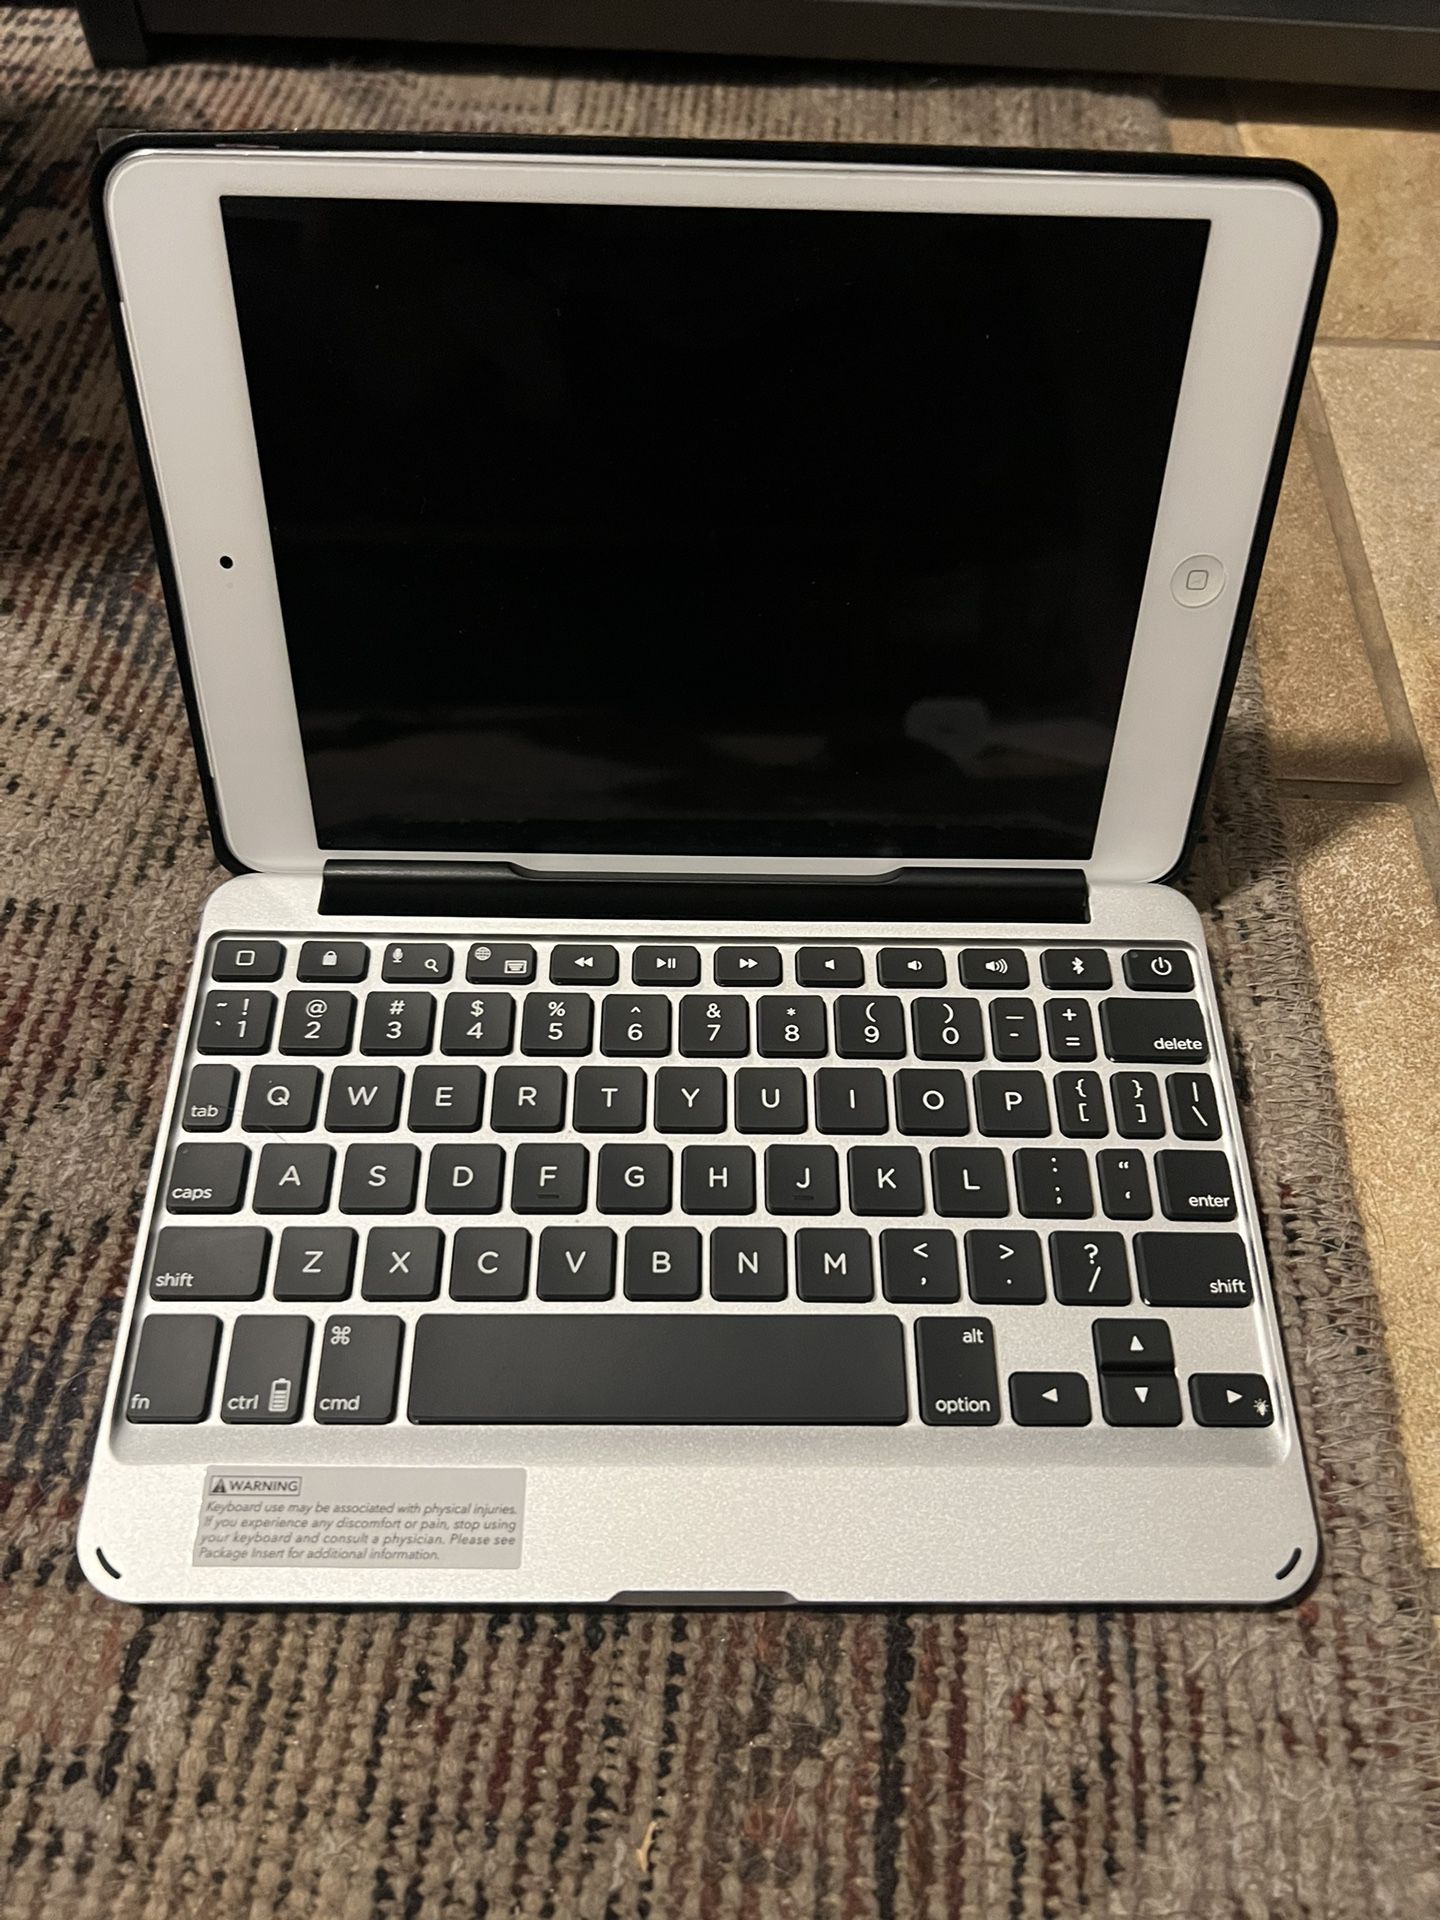 iPad Apple mini 2 Wi-Fi + Cellular Bluetoth Keyboard